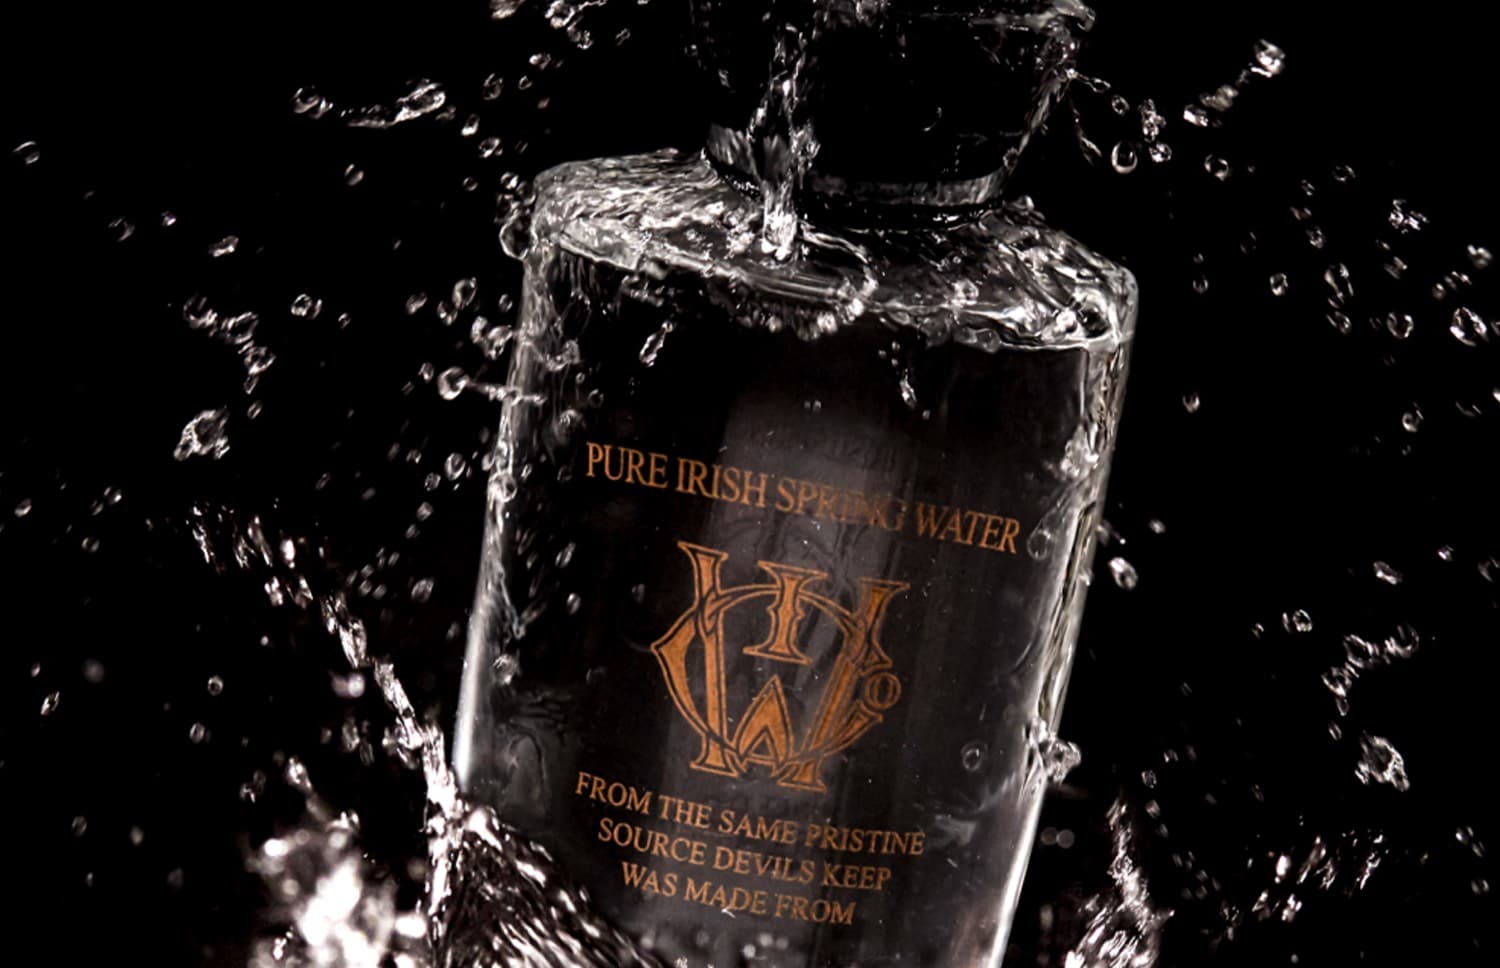 Pure Irish spring water by The Craft Irish Whiskey Co.